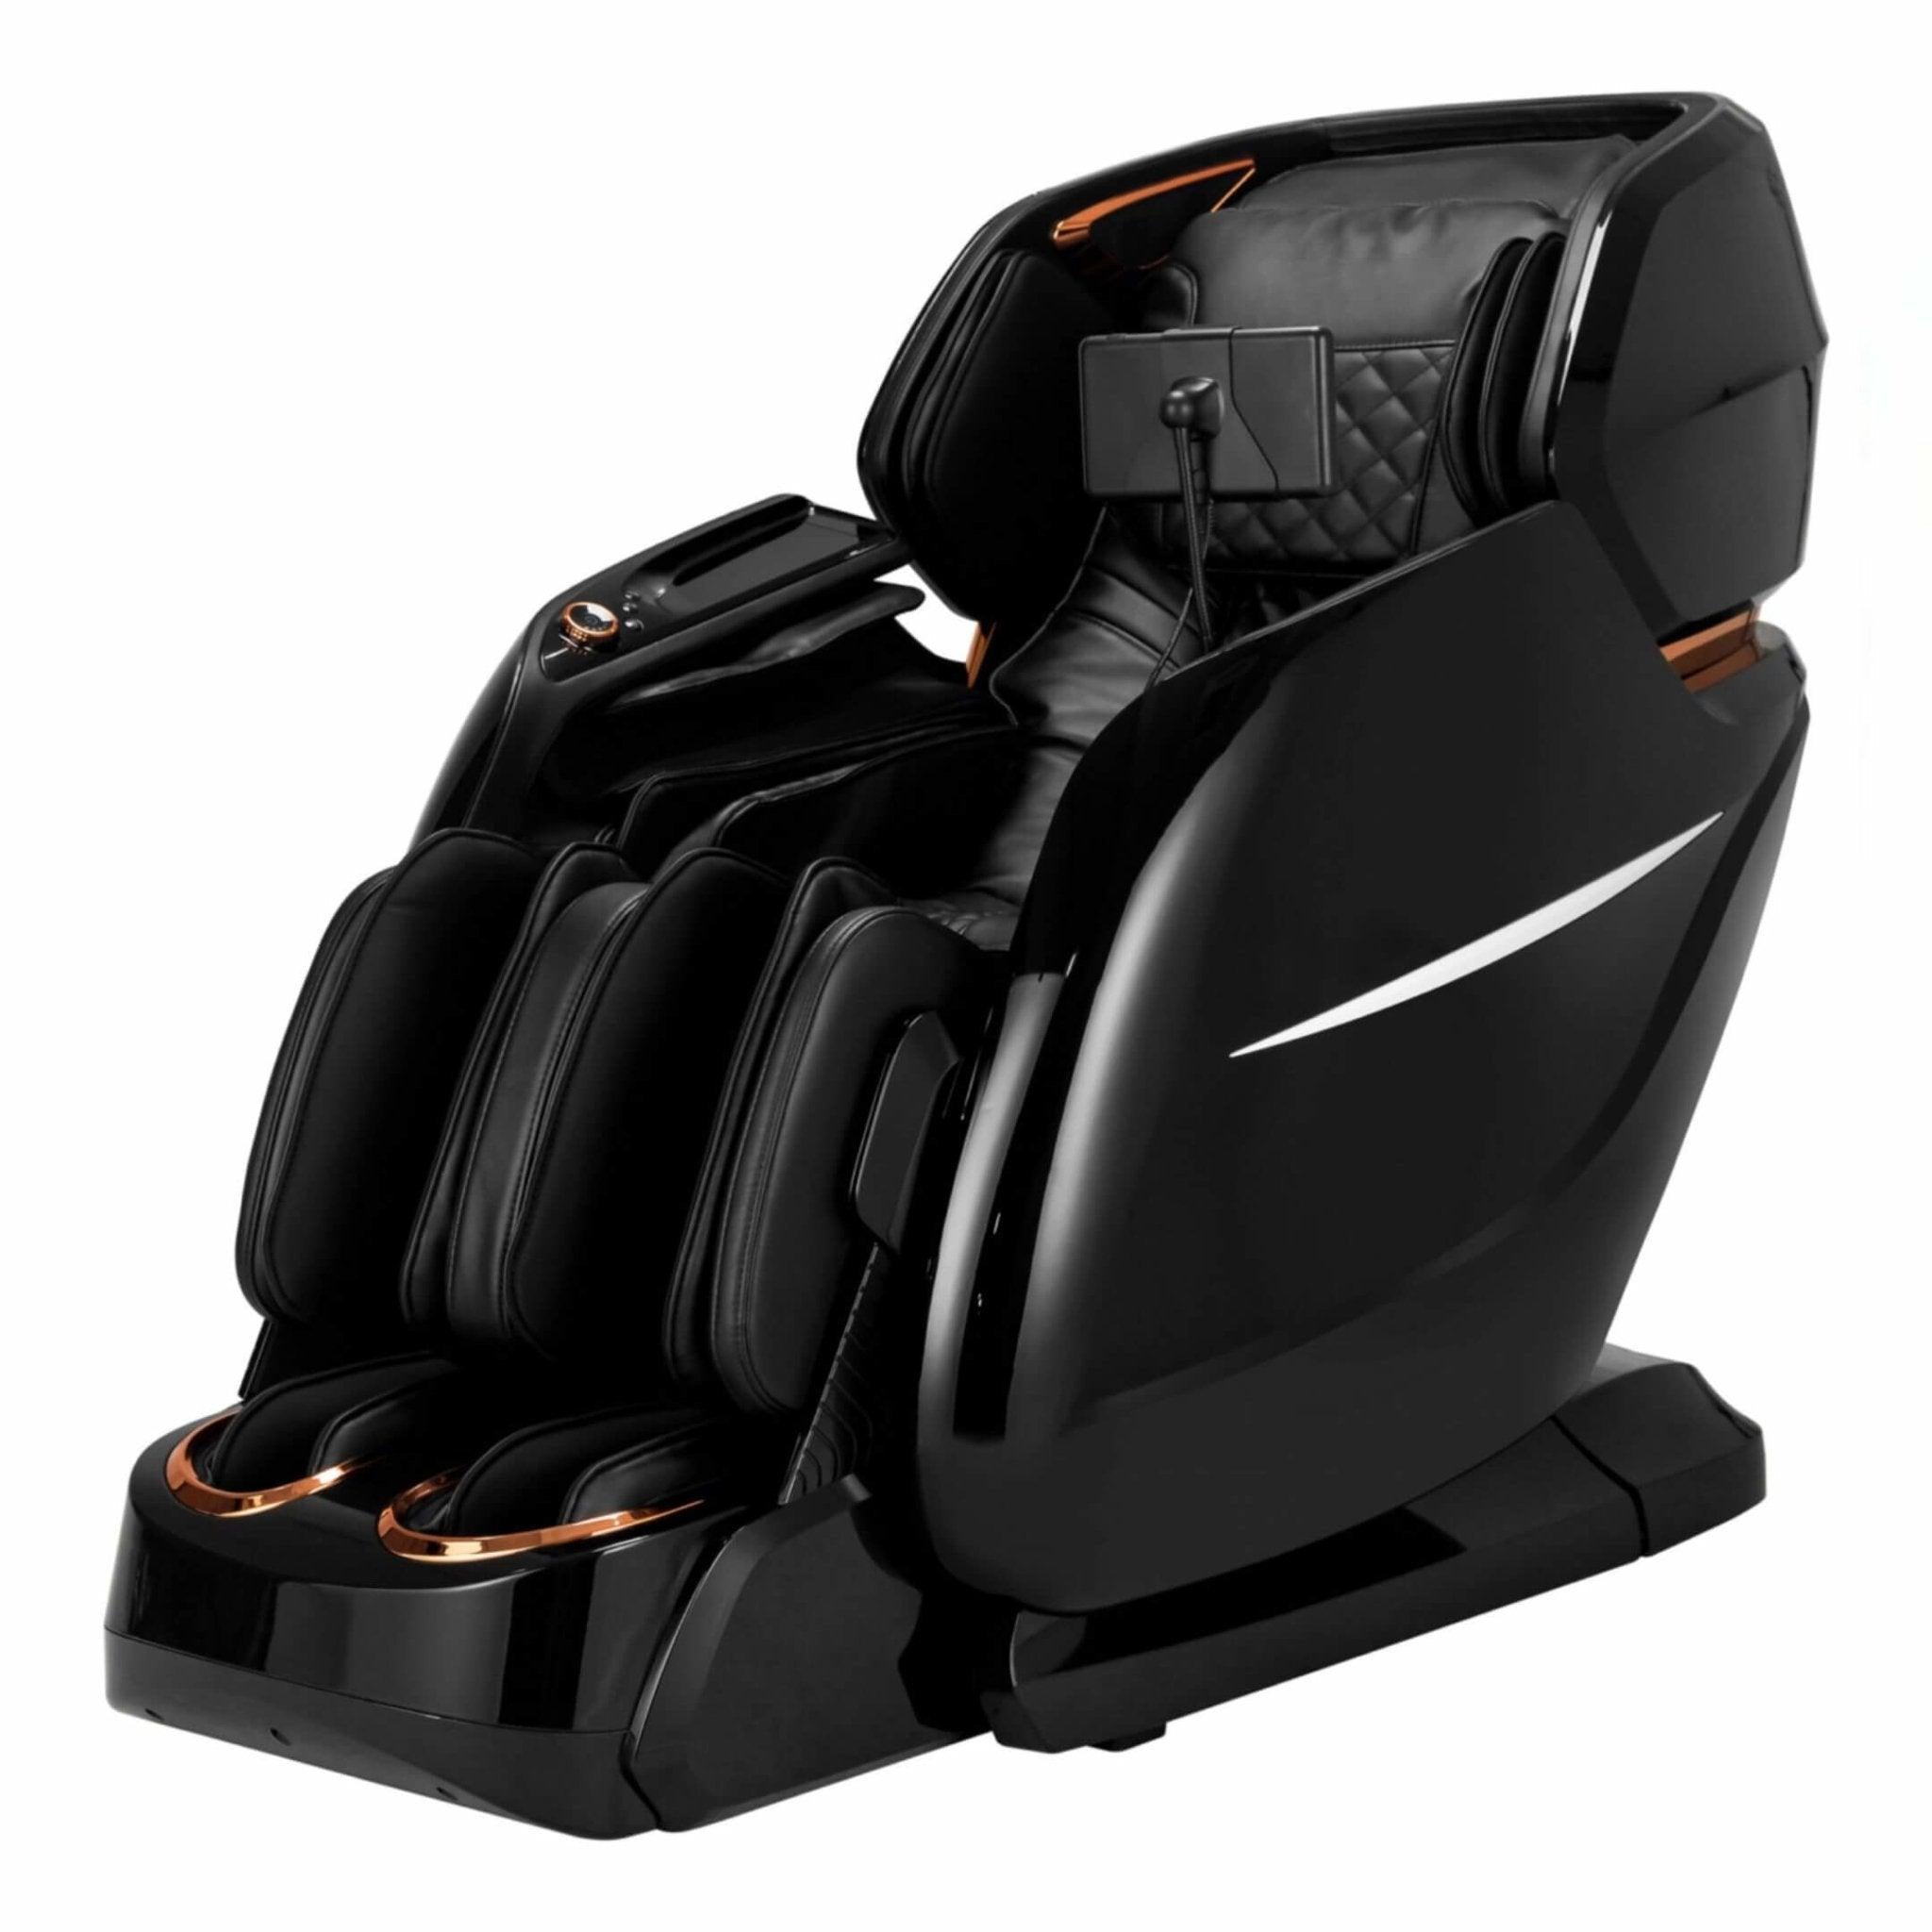 RT-8810 Luxurious 4D Massage Chair